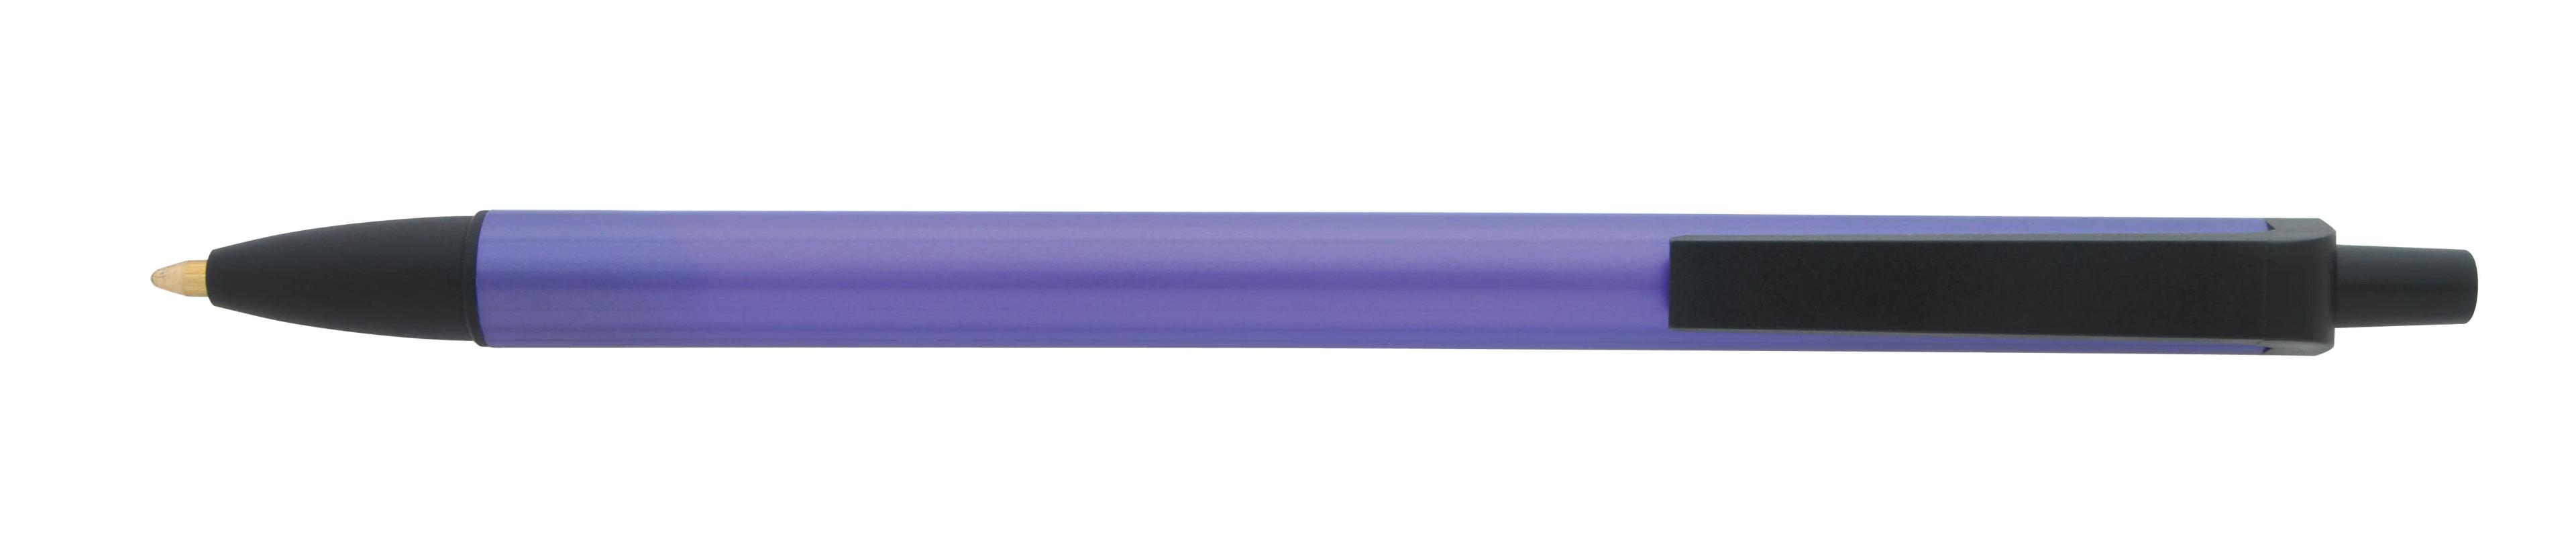 Metallic Contender Pen 3 of 12